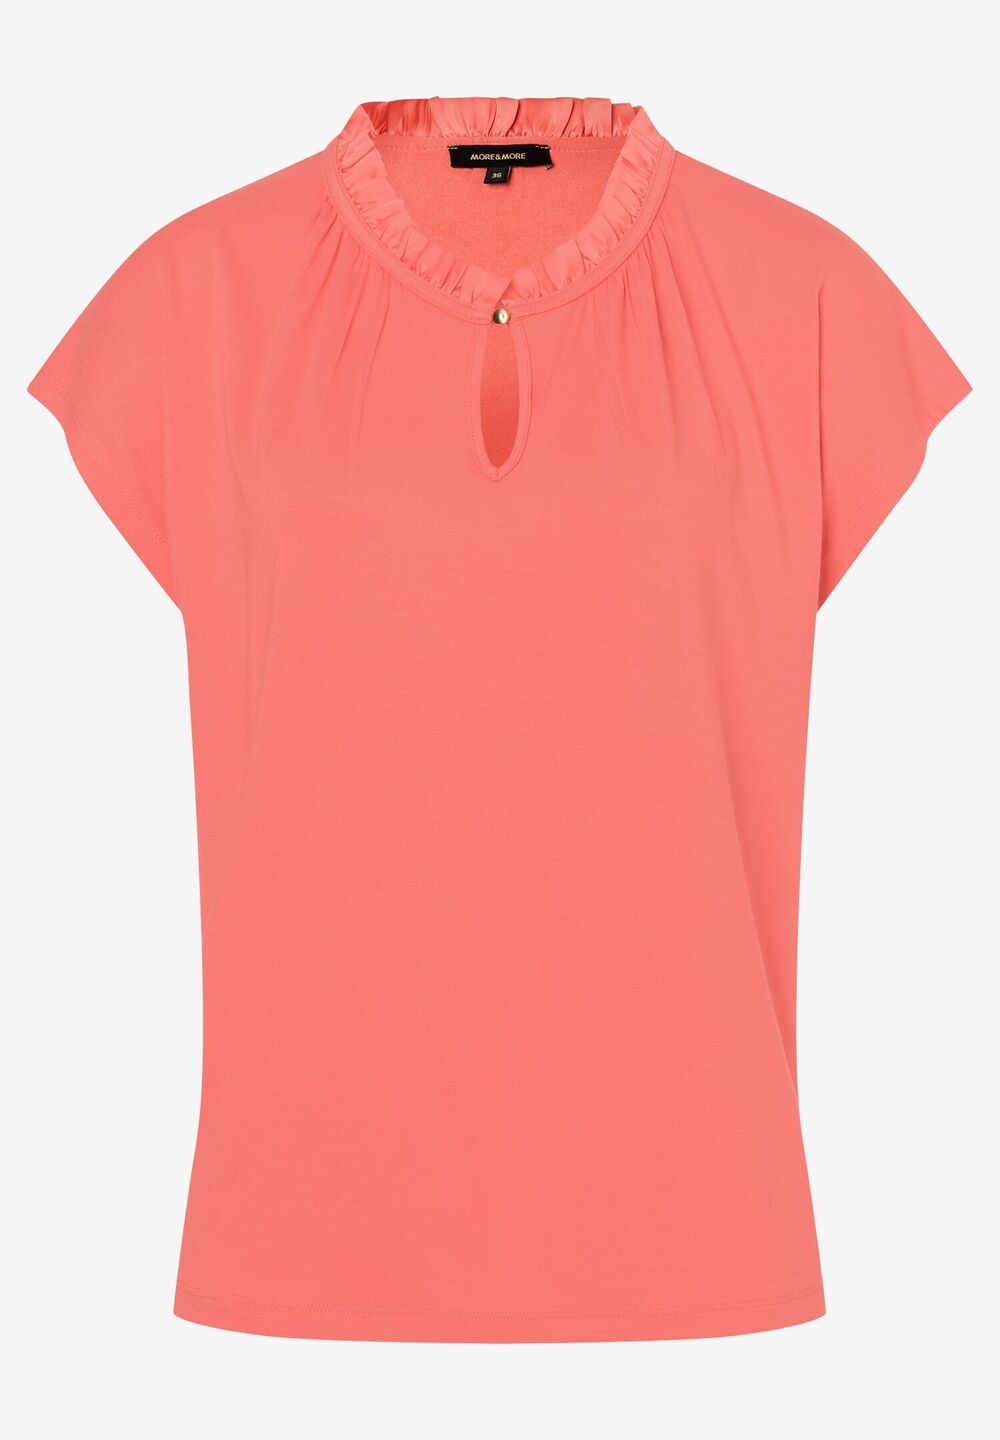 T-Shirt mit Rüschenkante, milky coral, Frühjahrs-Kollektion, apricotDetailansicht 1